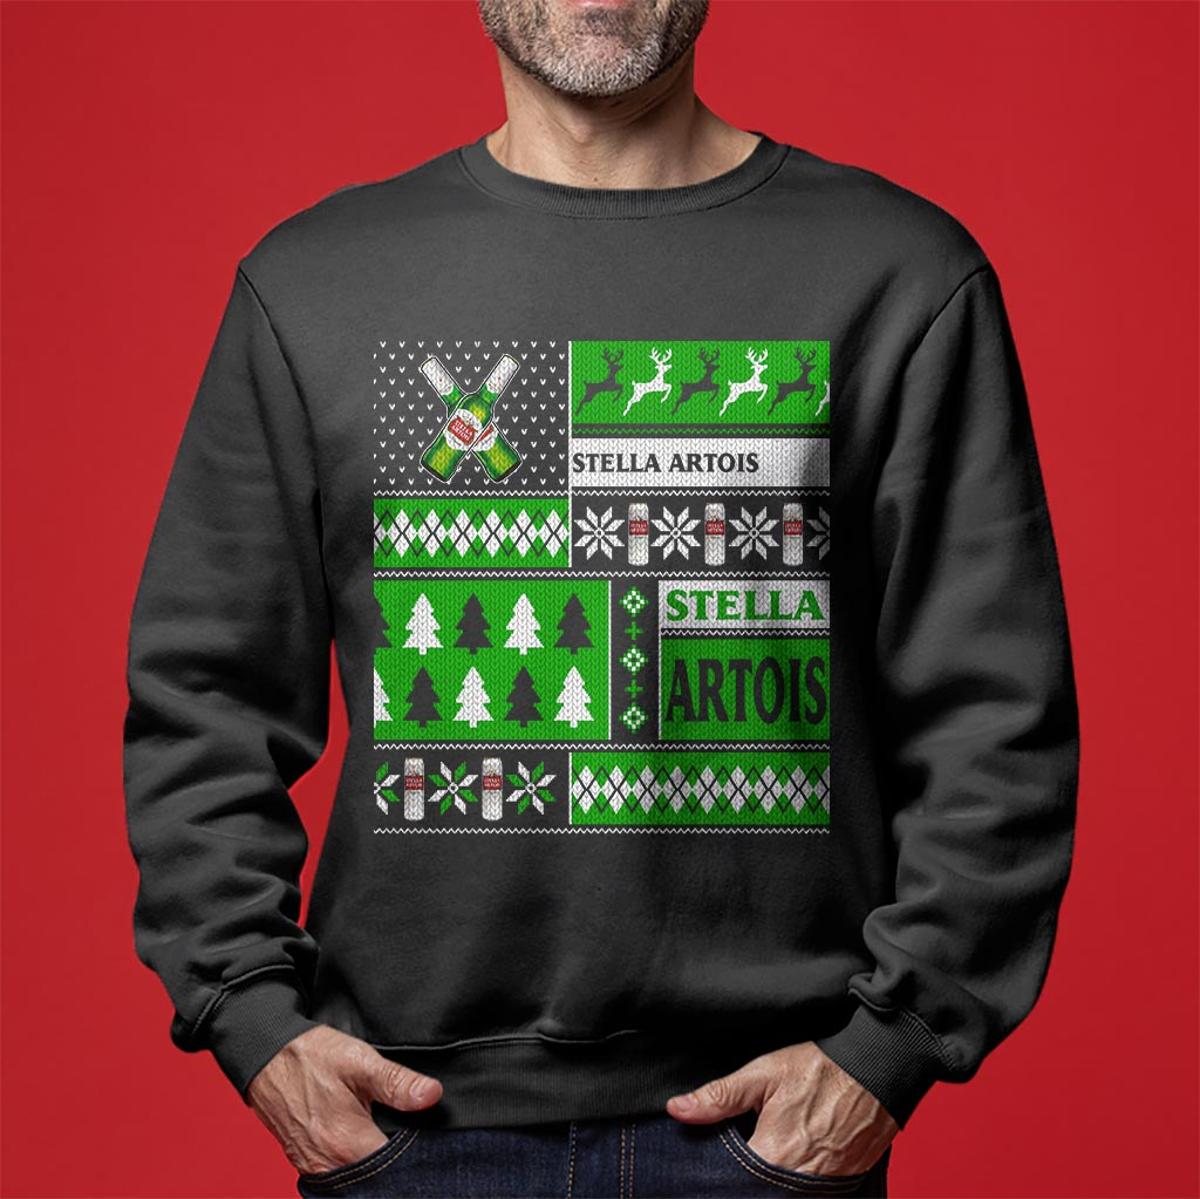 Prep And Landing Naughty And Nice Christmas Sweater